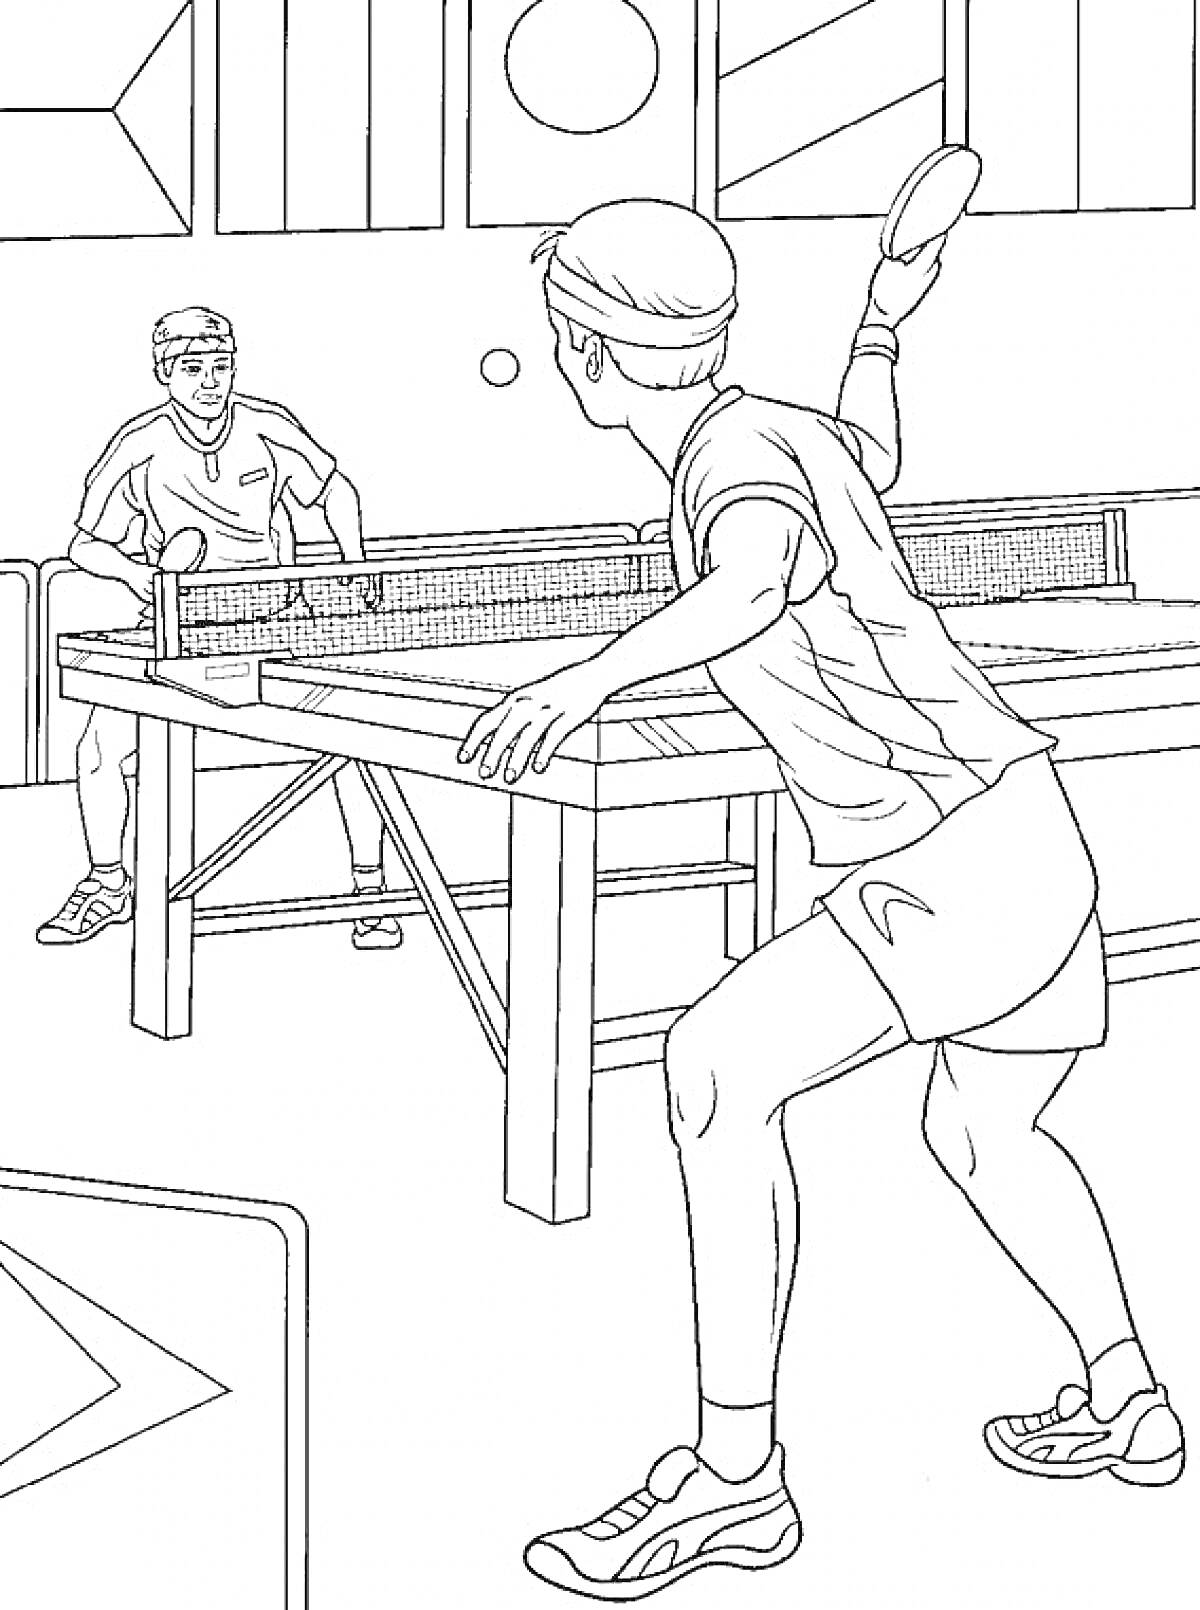 Двое игроков в настольный теннис в спортивном зале, ракетки, мячик, теннисный стол, фигурные узоры на стене.